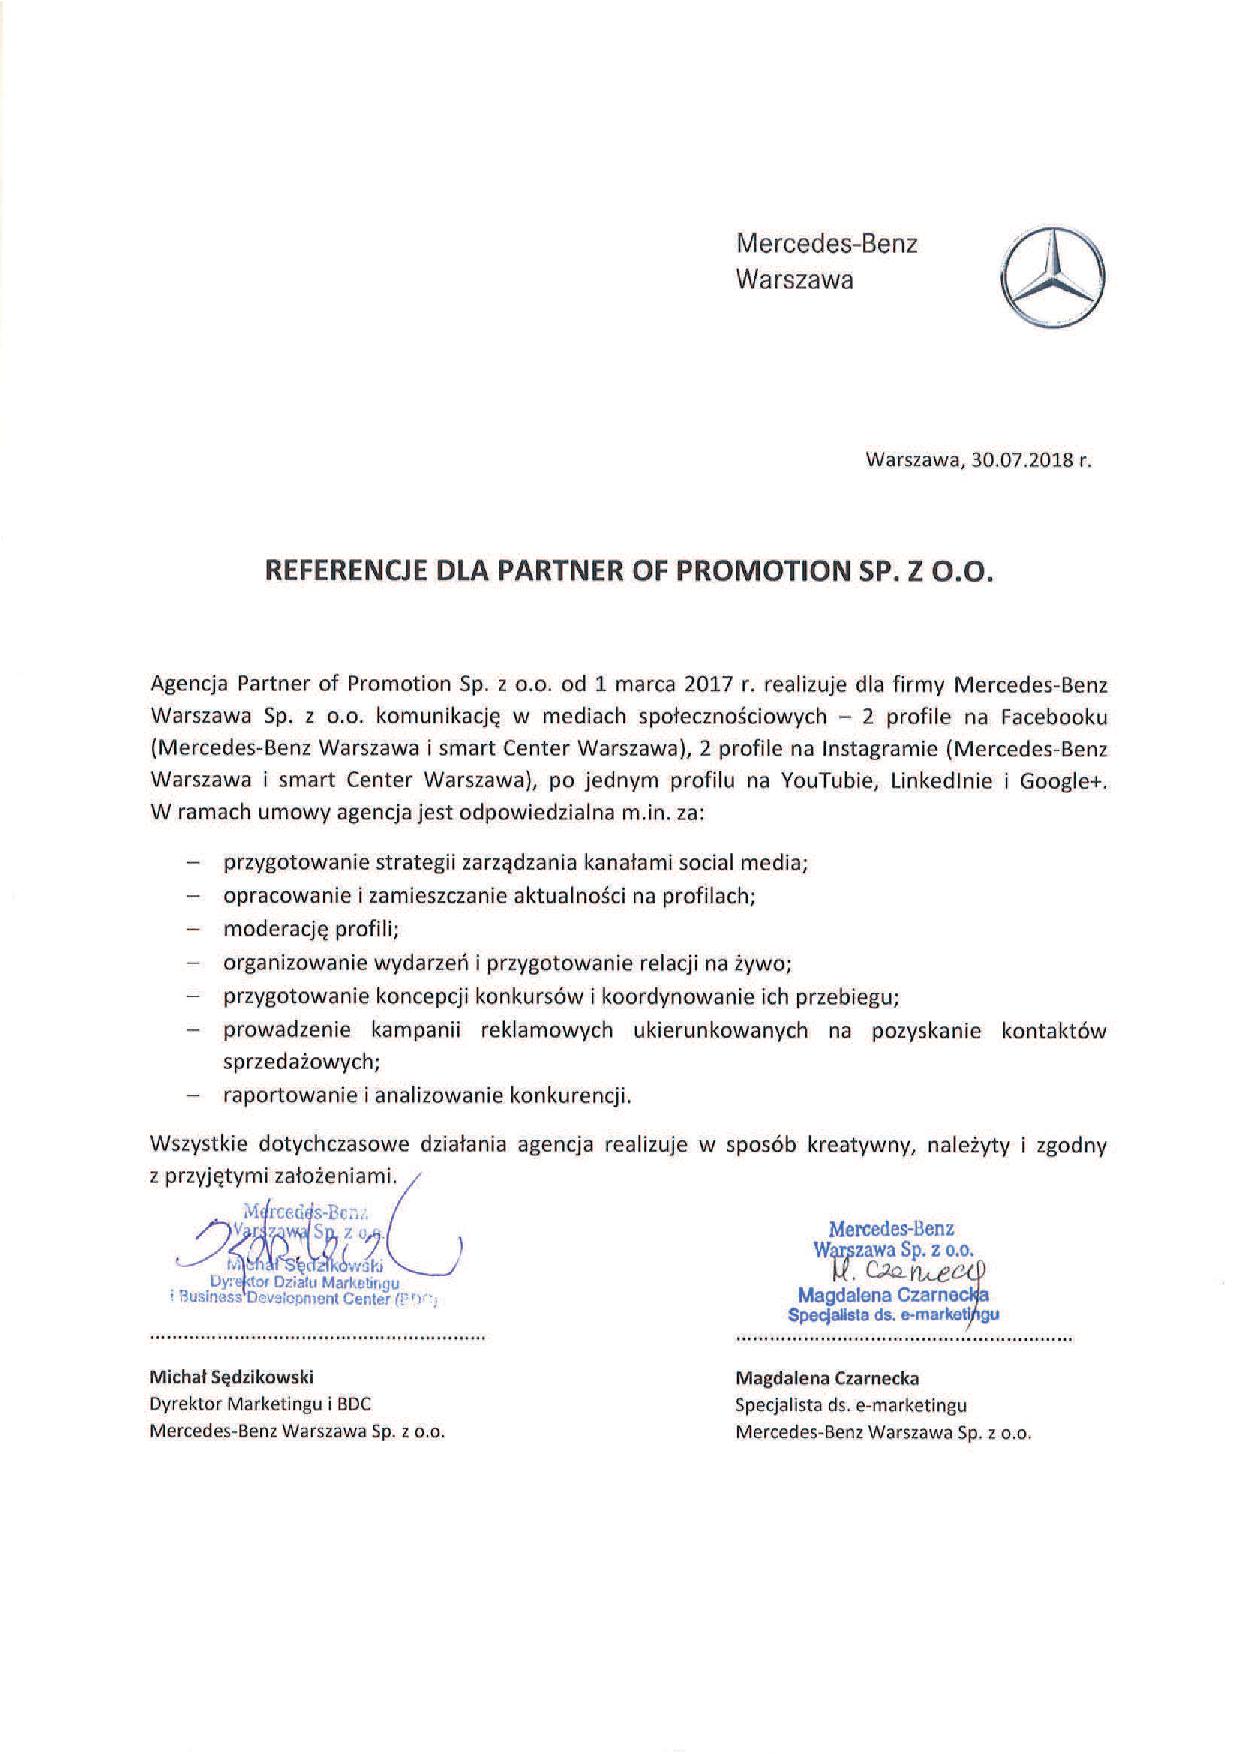 Mercedes-Benz Warszawa_referencje_social media_SKAN_30072018.jpg